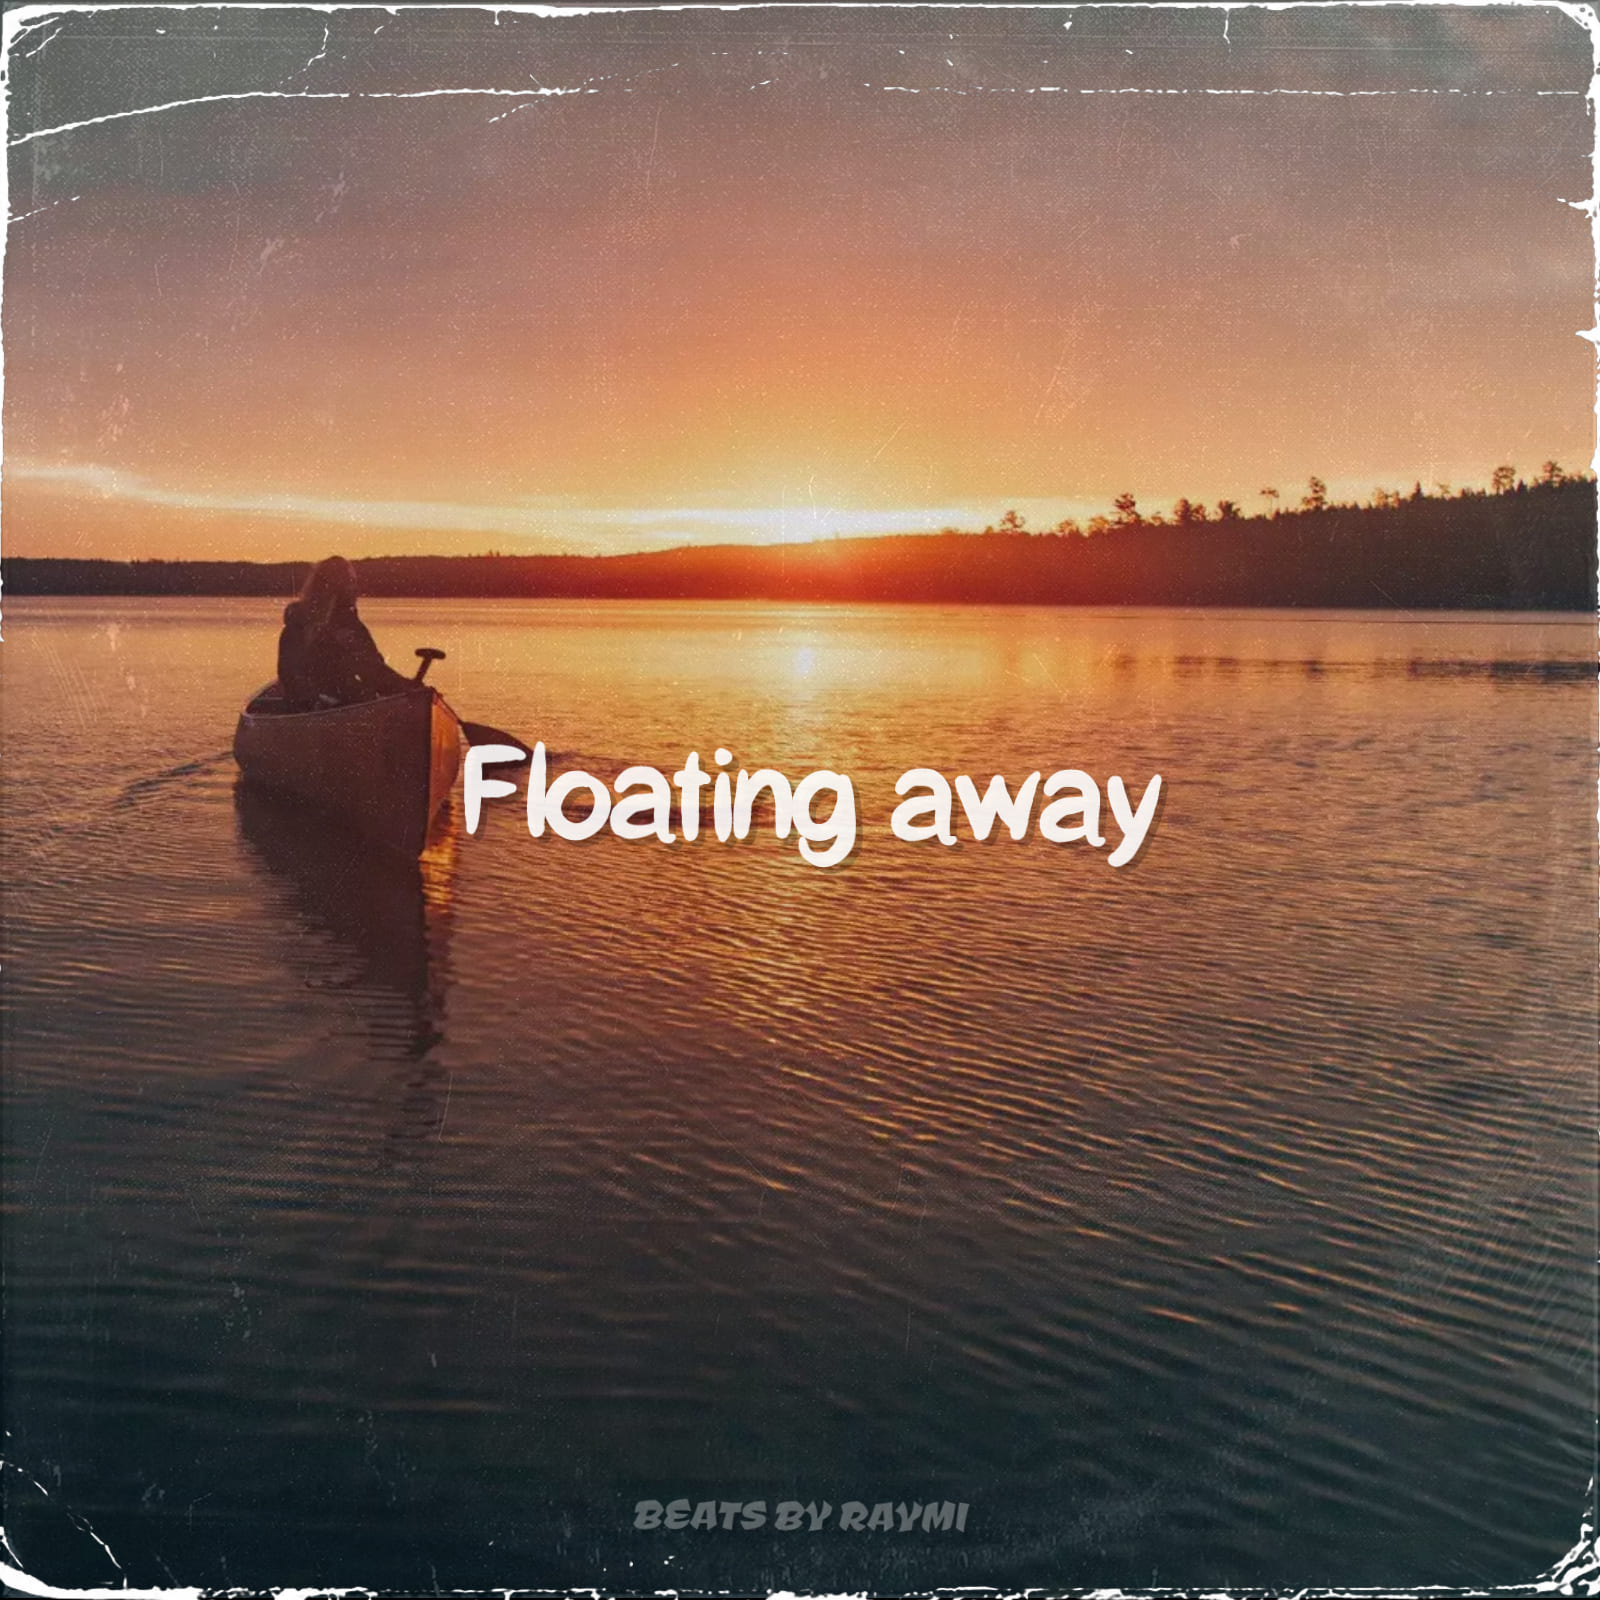 обложка бита, Raymi, музыка, cover, Floating away (красивый, гитарный pop бит)